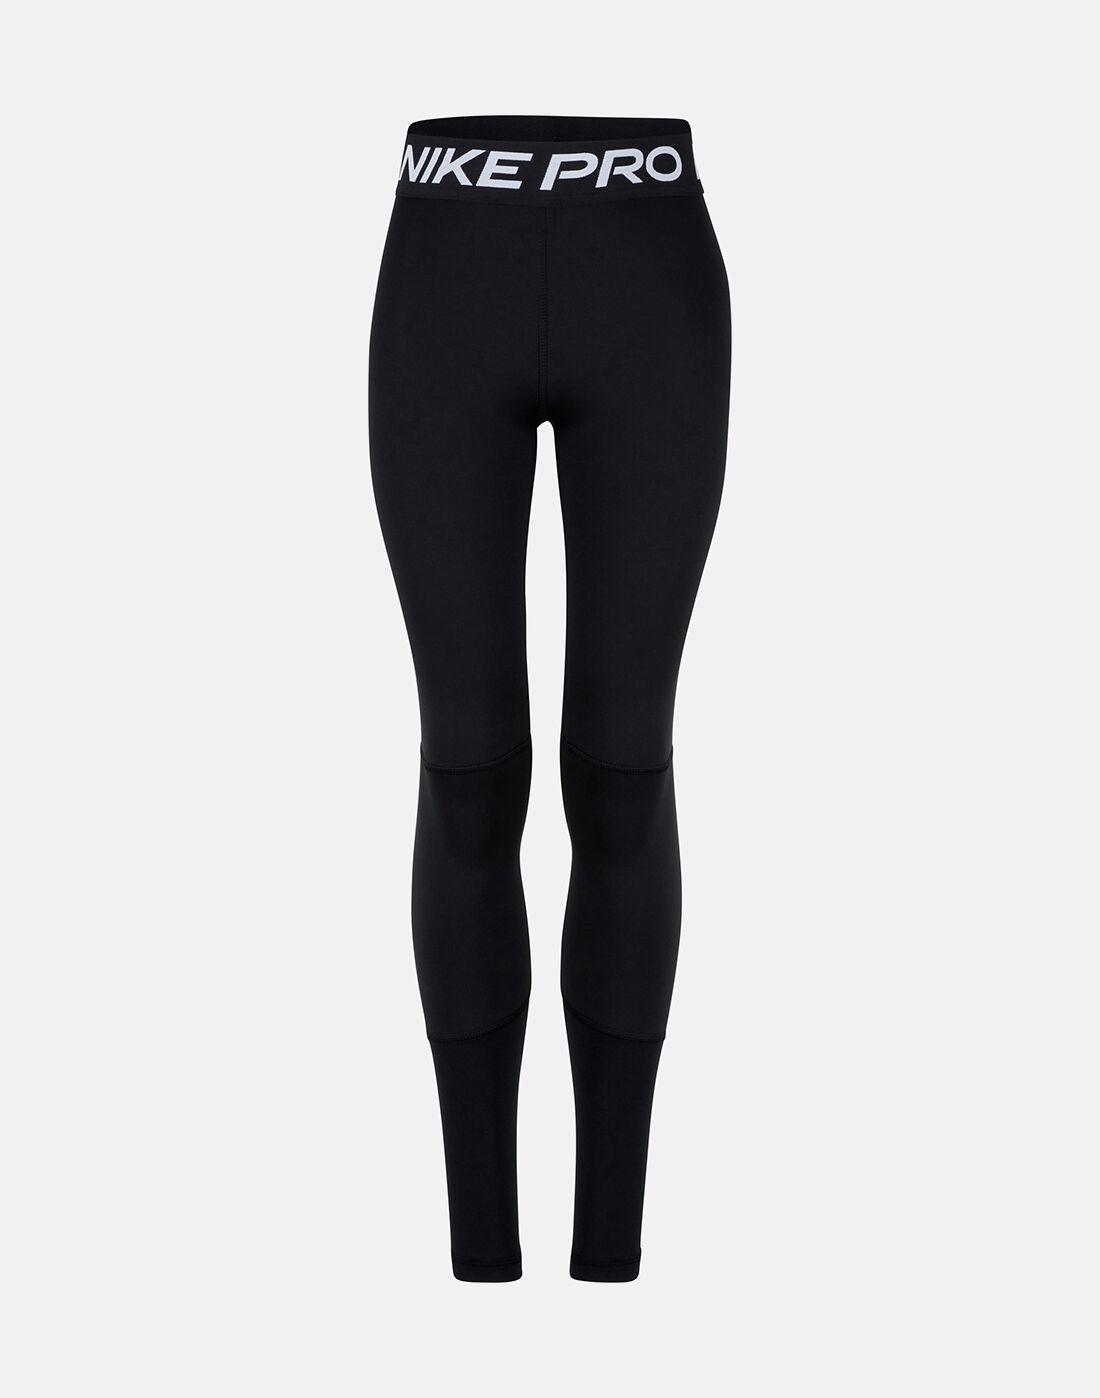 nike pro leggings price